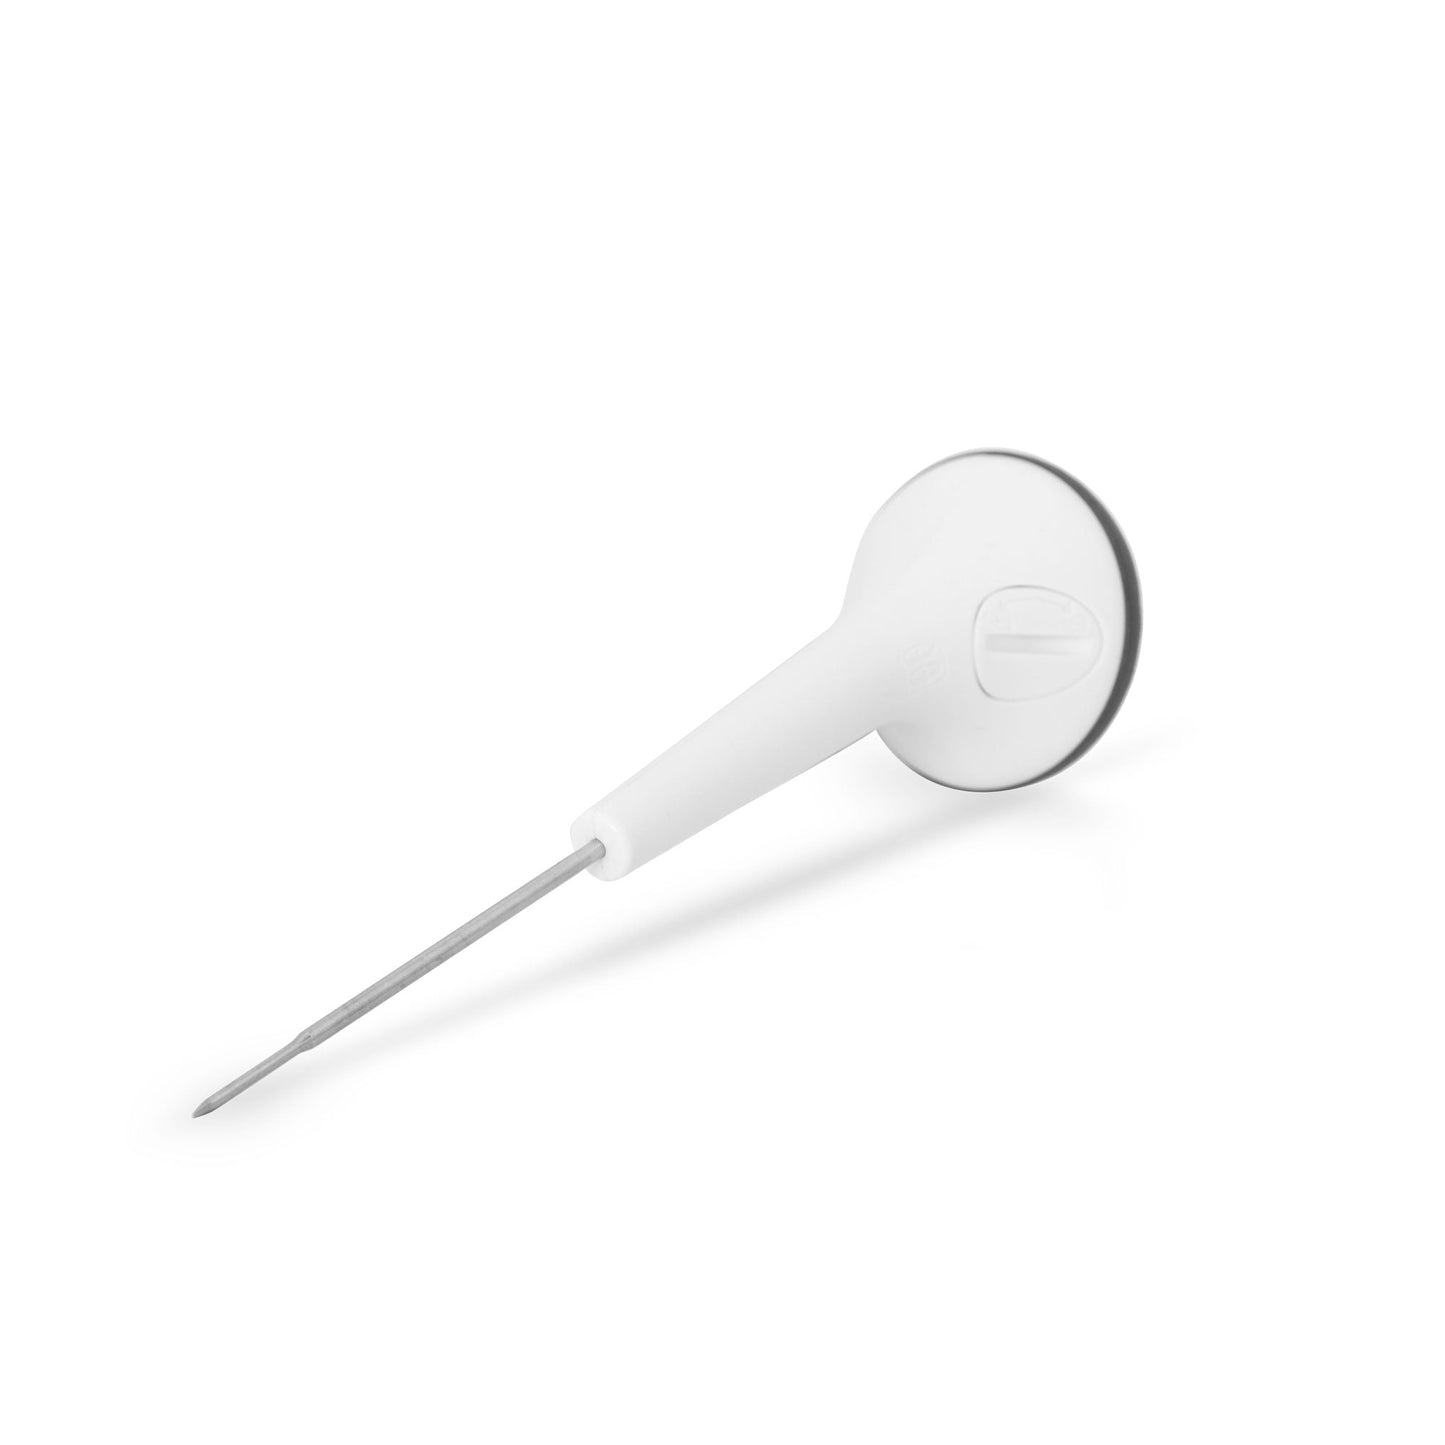 un Thermomètre étanche ThermaProbe blanc à affichage rotatif sur une surface blanche